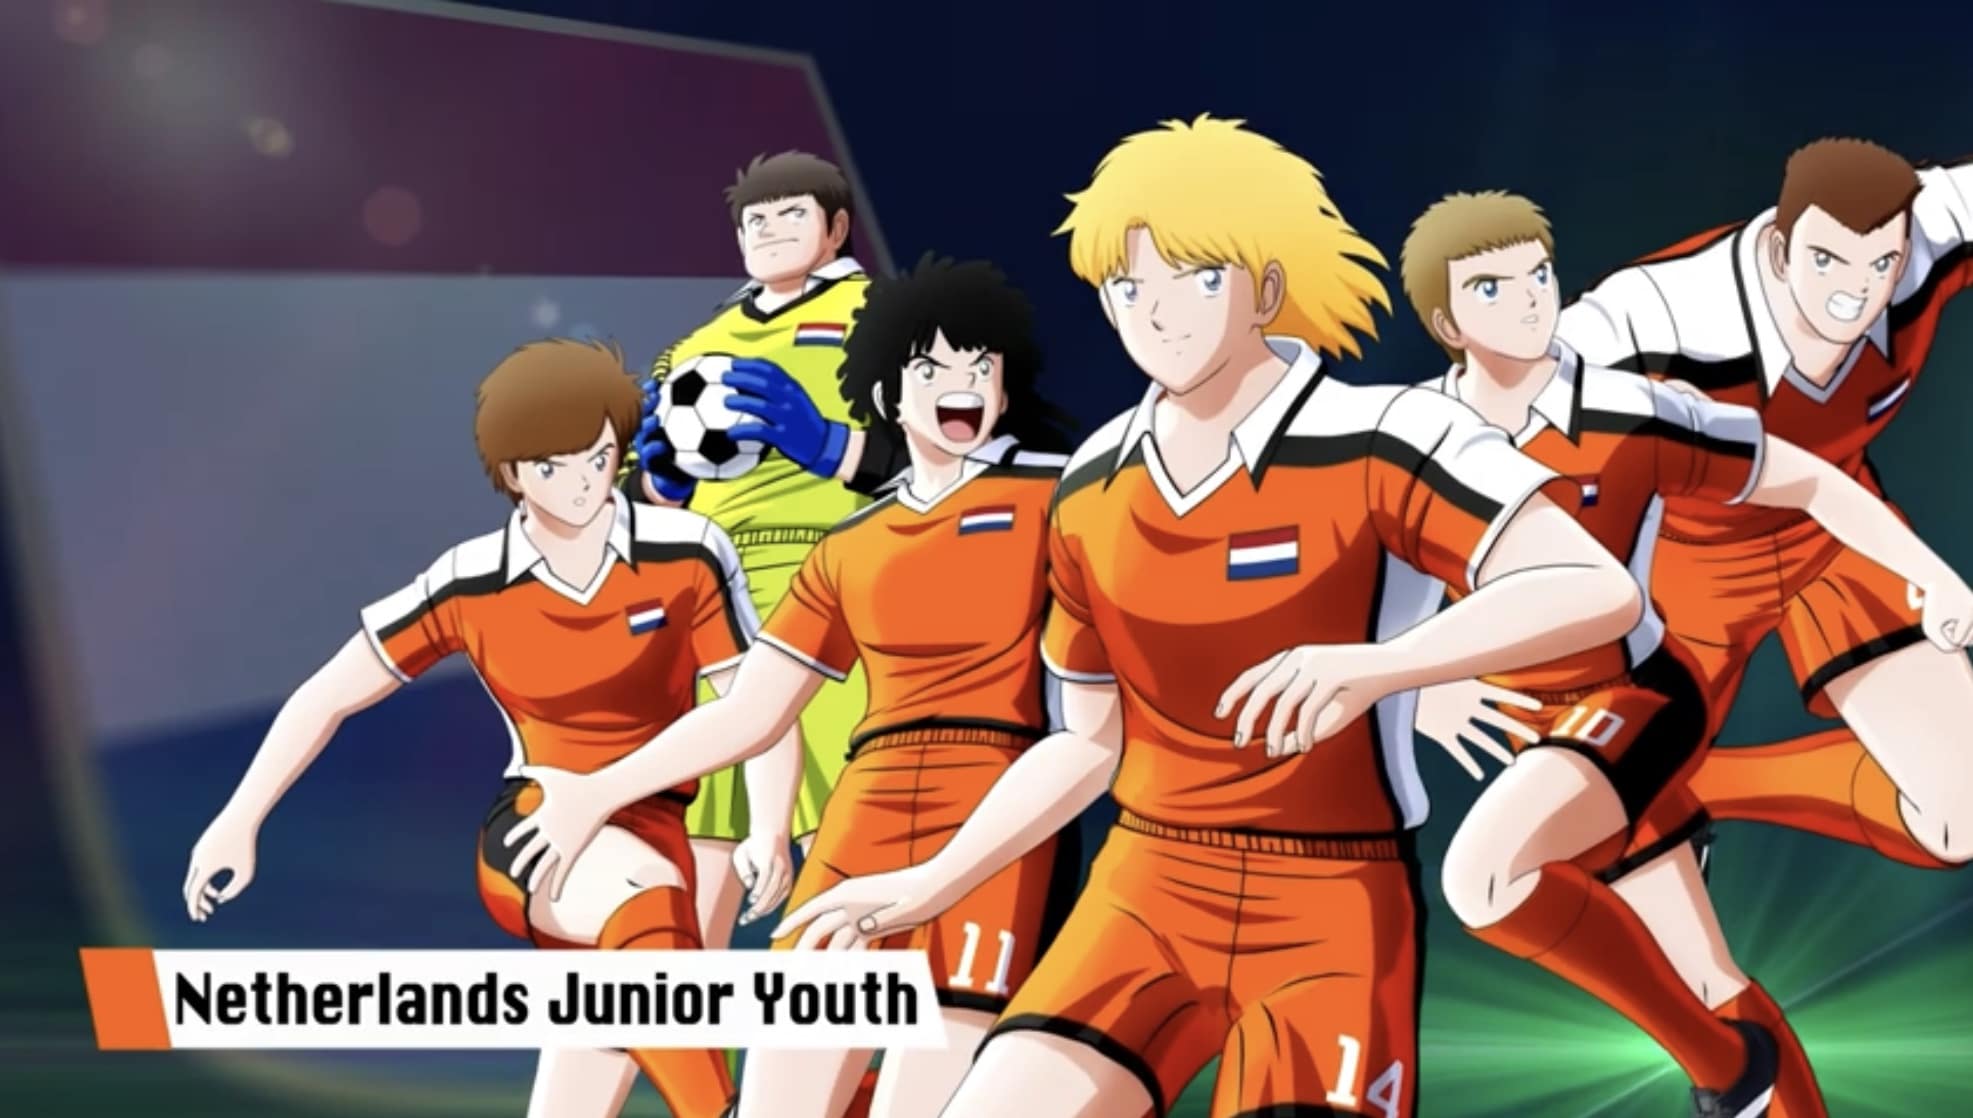 La Netherlands Junior Youth protagoniza este nuevo tráiler de Captain Tsubasa: Rise of New Champions